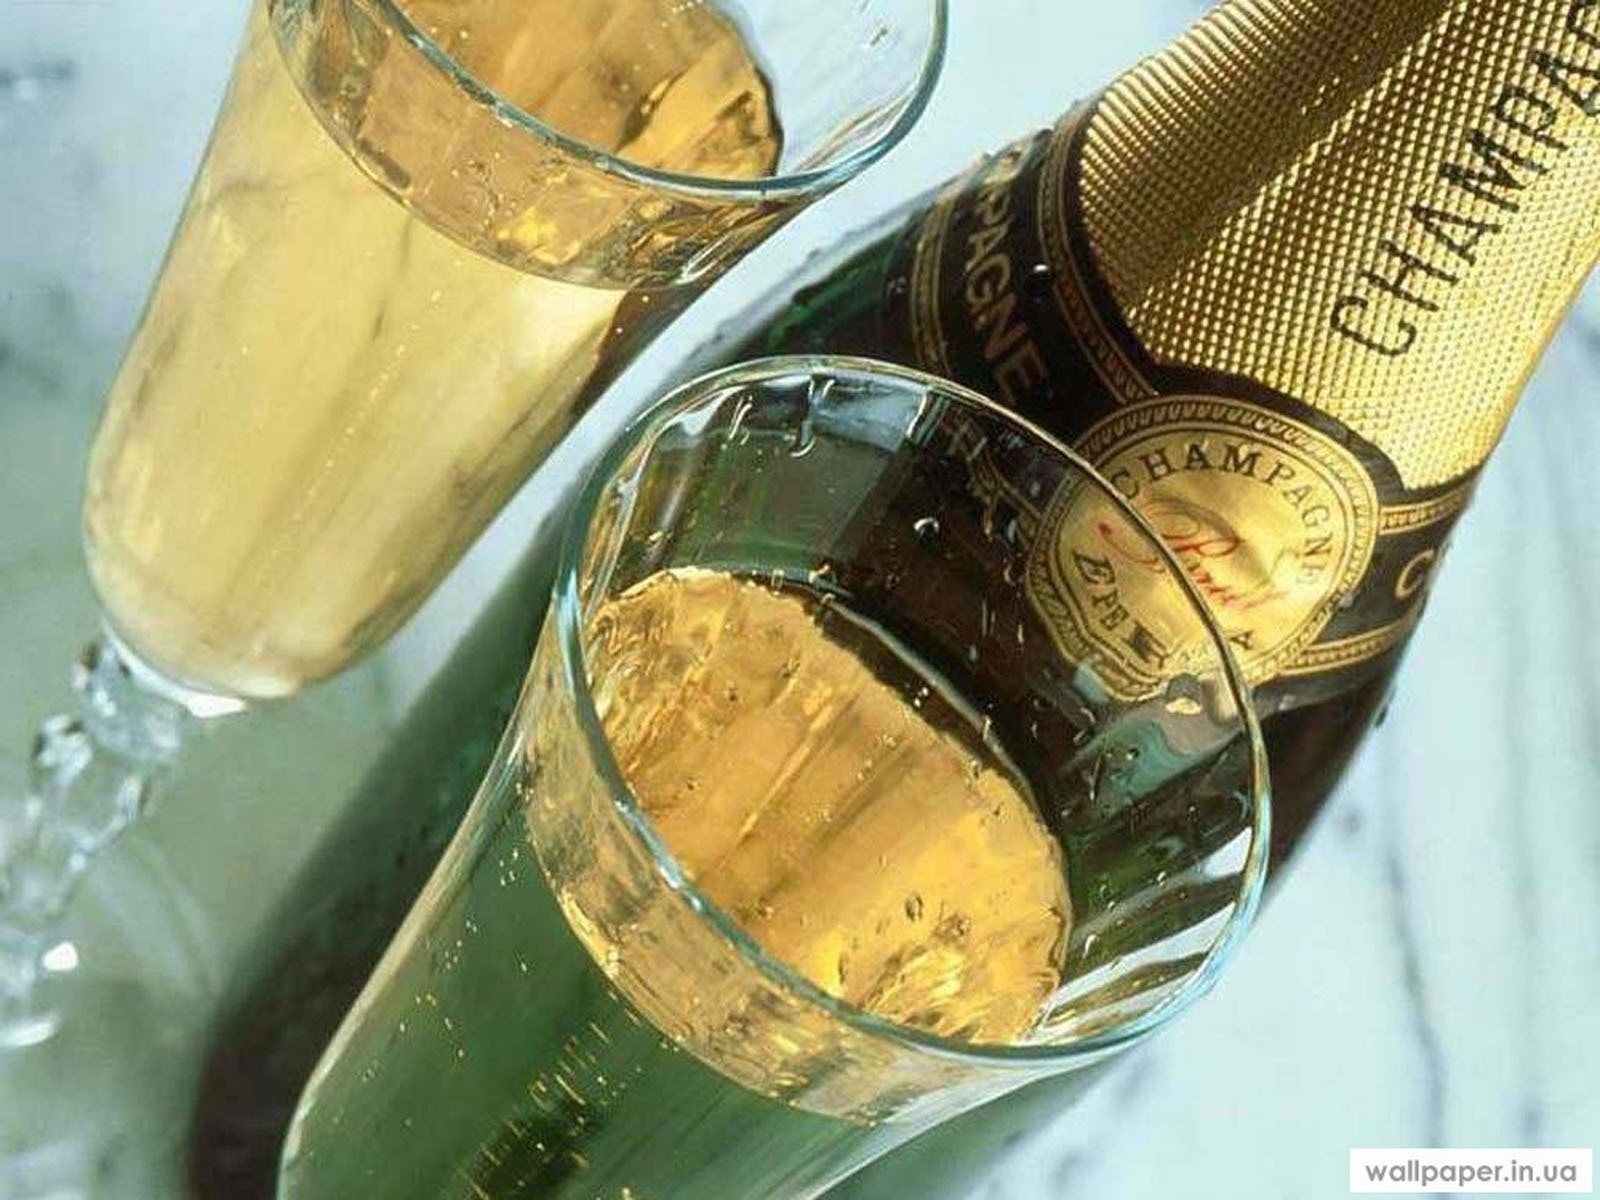 Шампанское выражения. Бокалы с шампанским. Шампанское на столе. Шампанское в стакане. Бутылка шампанского.